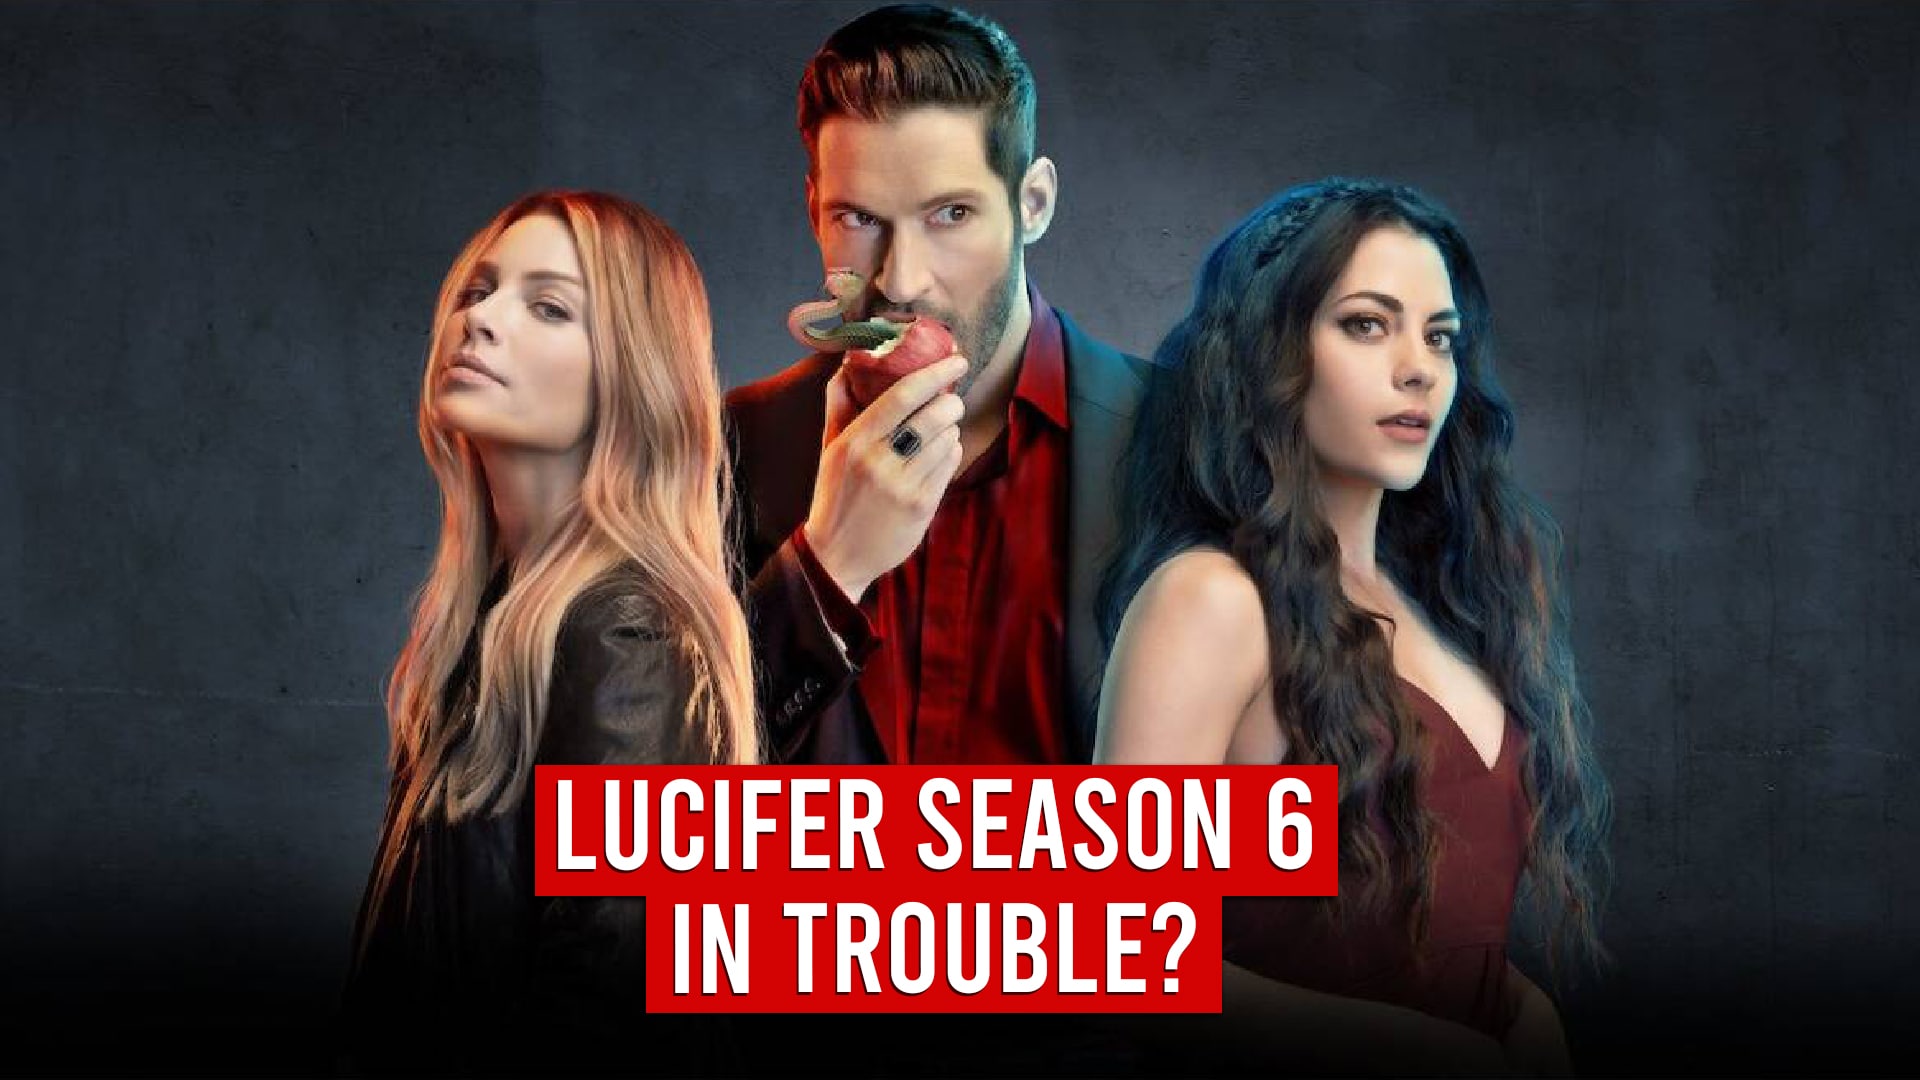 Lucifer Season 6 In Trouble?